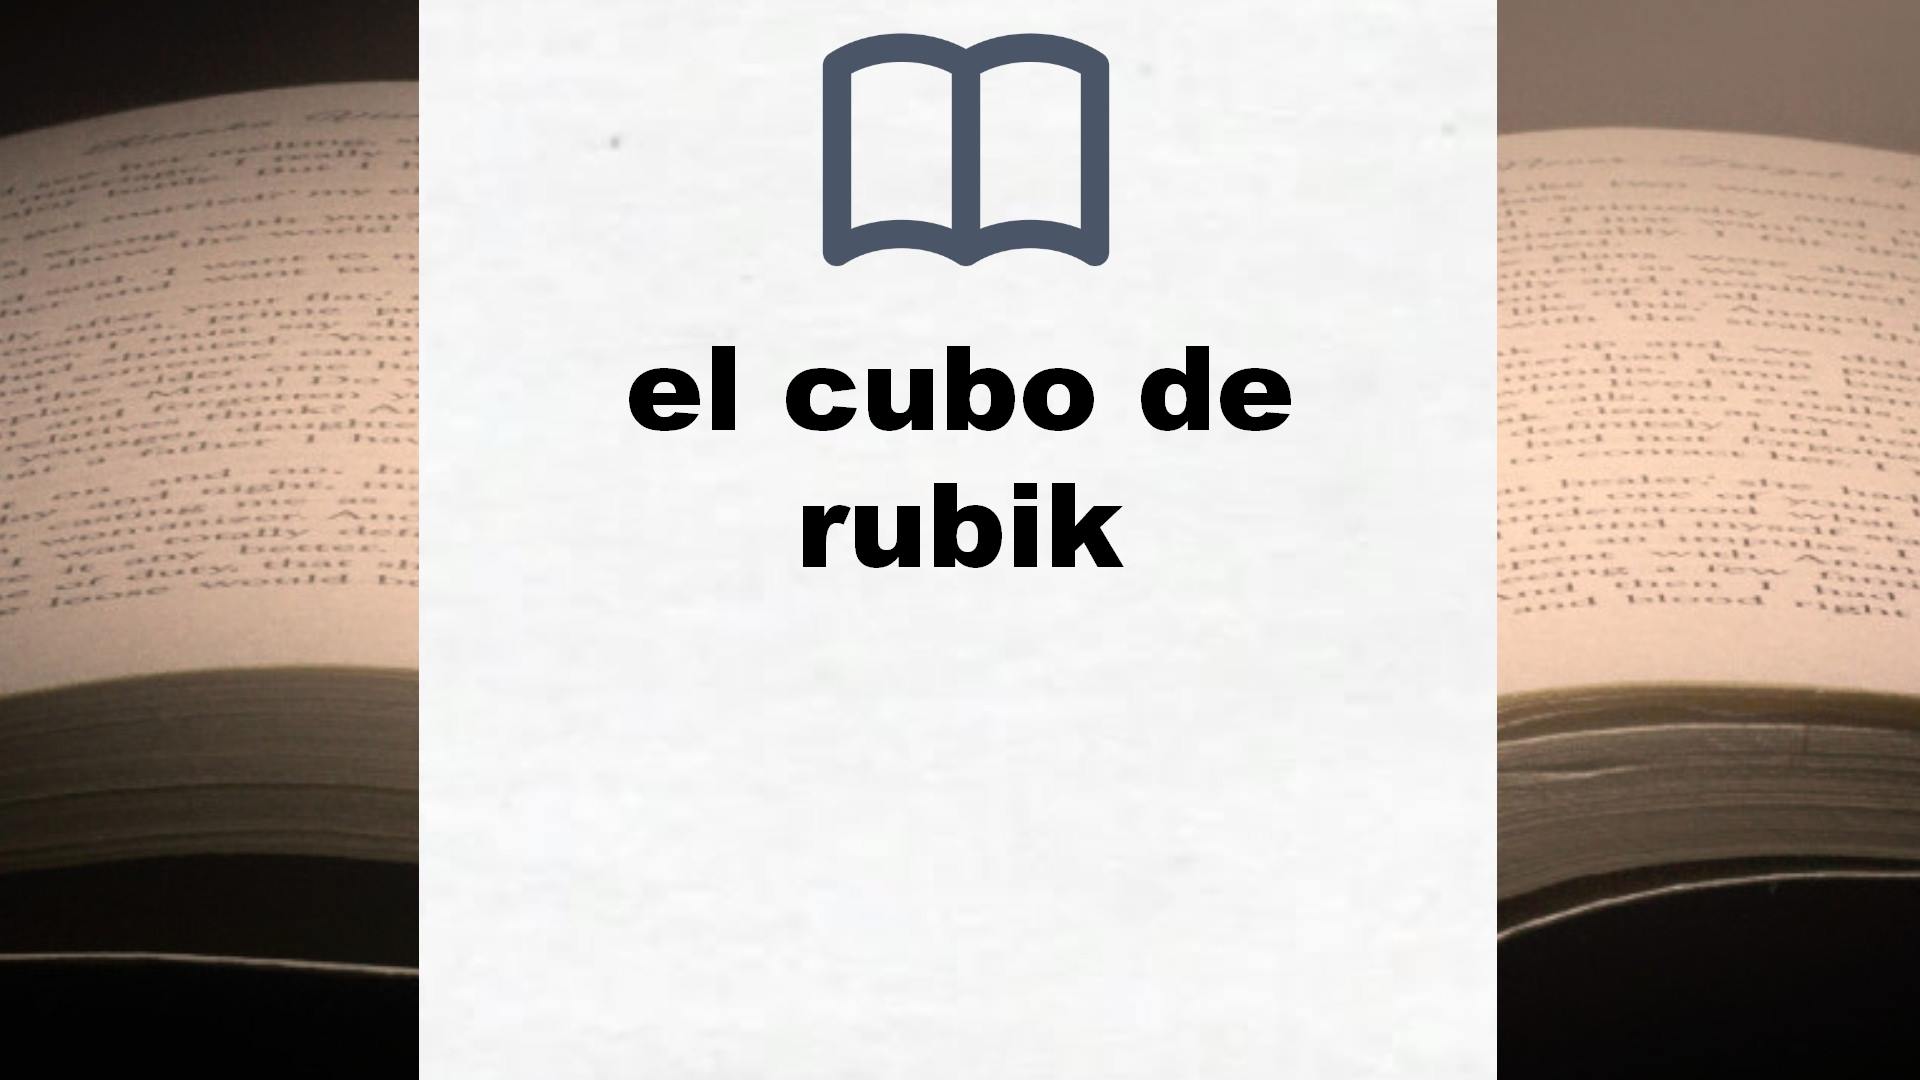 Libros sobre el cubo de rubik